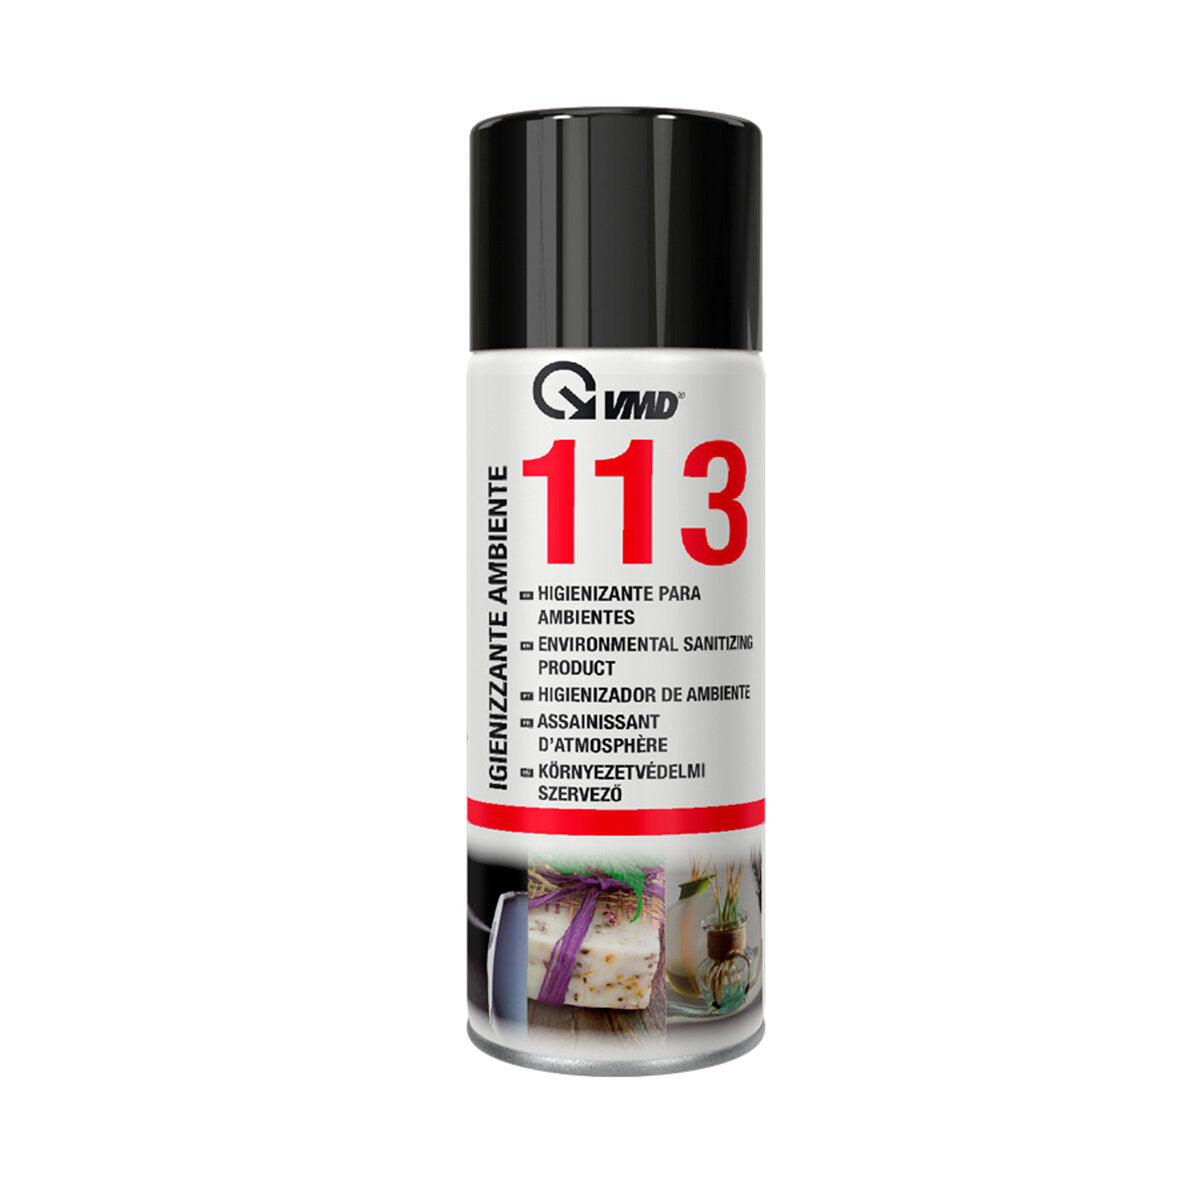 Spray assainissant VMD 113 pour environnements et véhicules